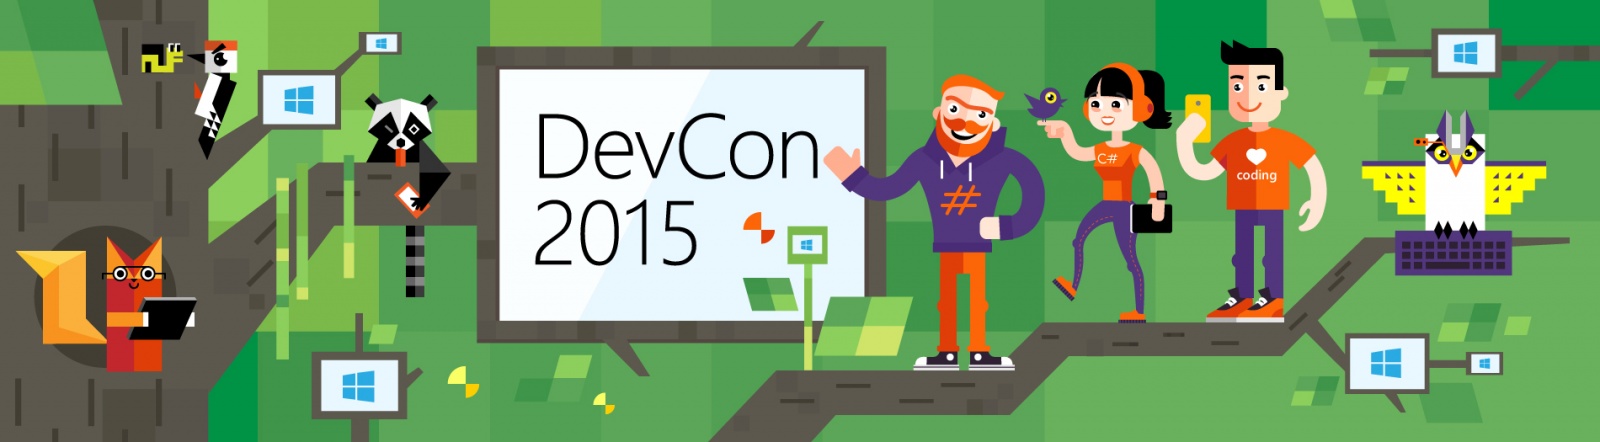 DevCon 2015: анонс докладчиков – представителей сообщества - 1